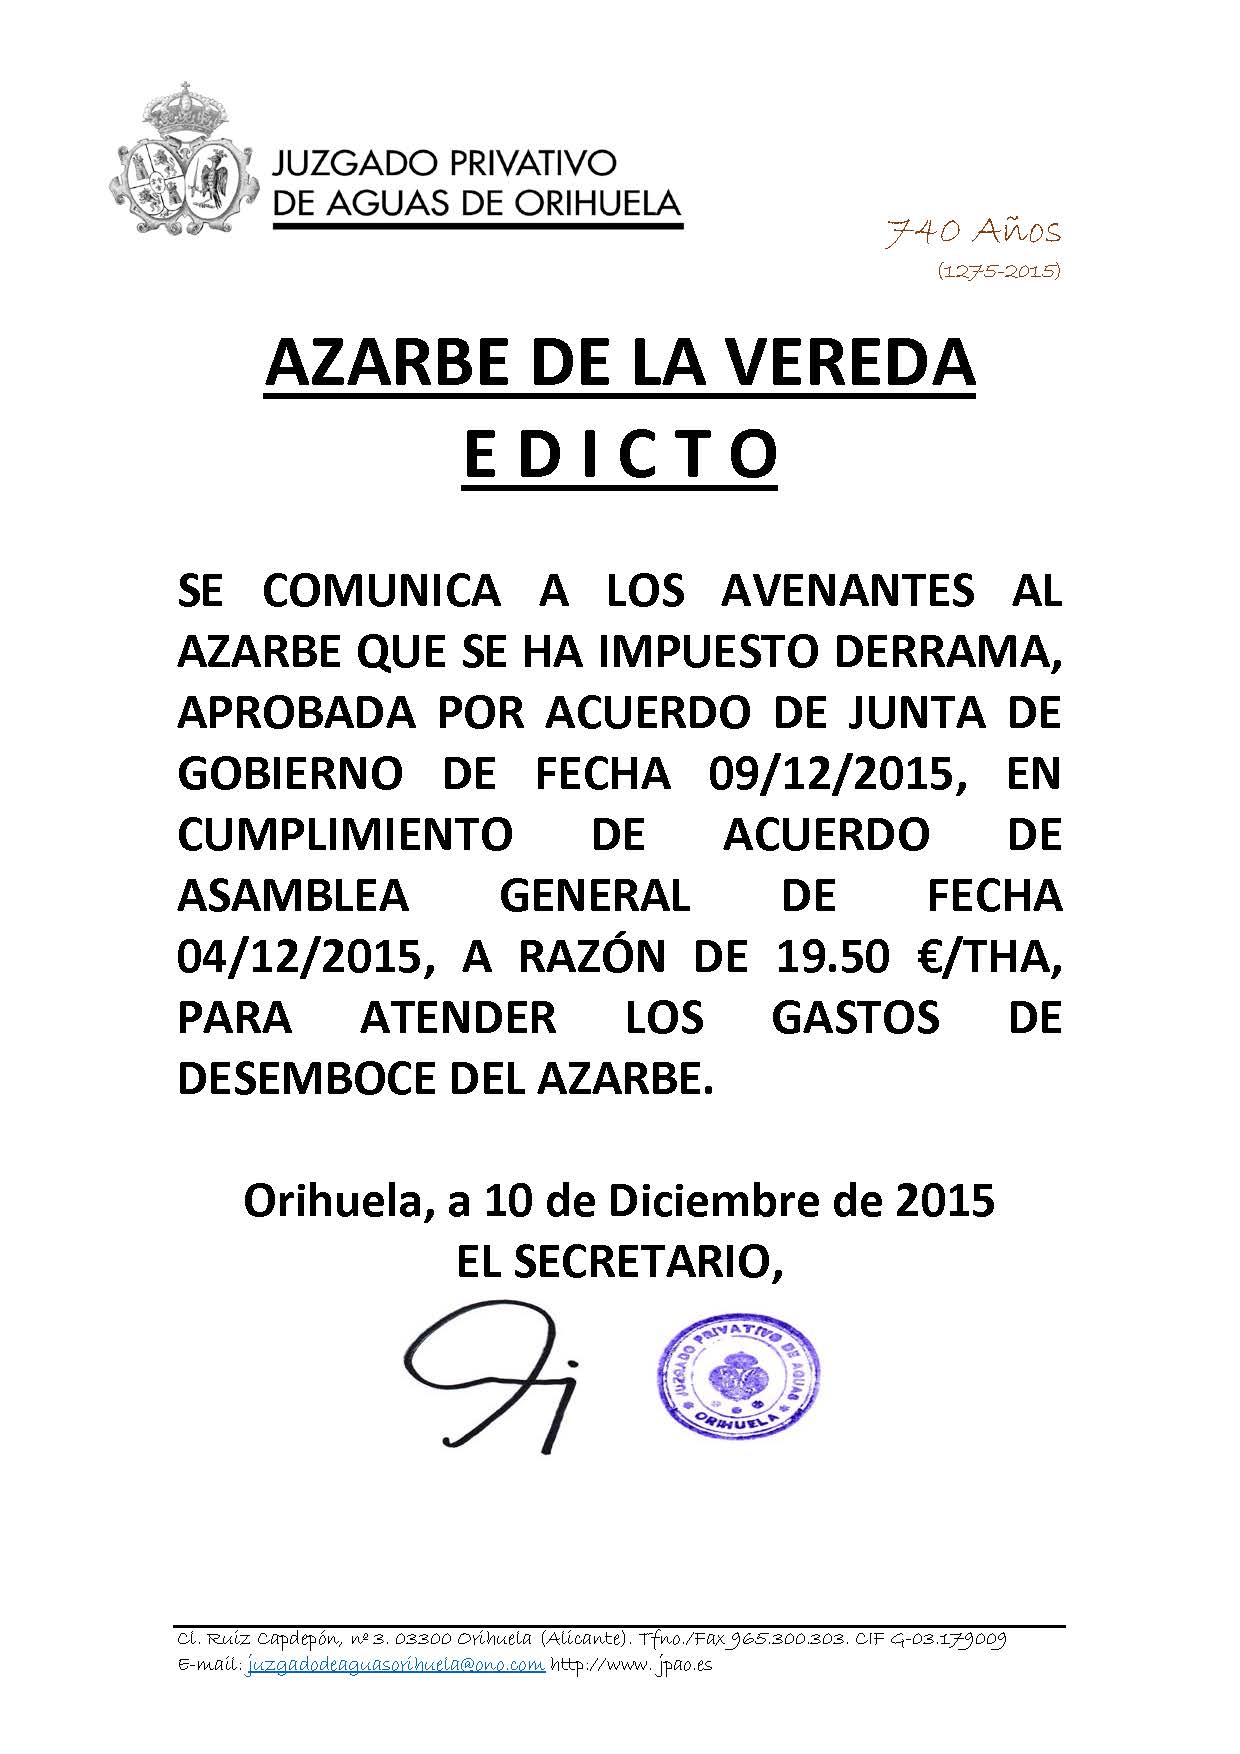 177 2015 azarbe de la vereda. edicto imposición derrama